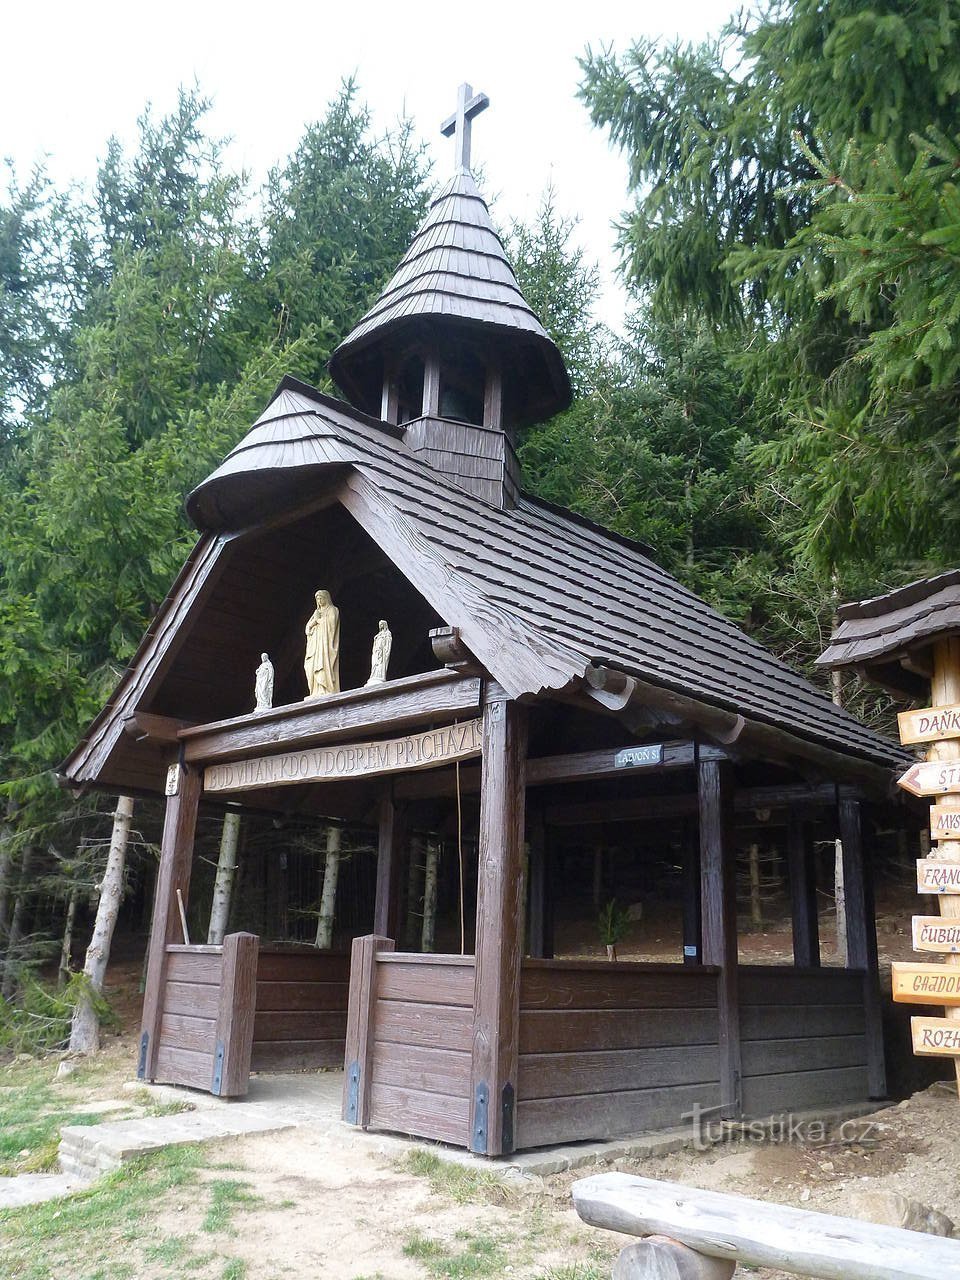 Une chapelle en bois avec une cloche et insolite